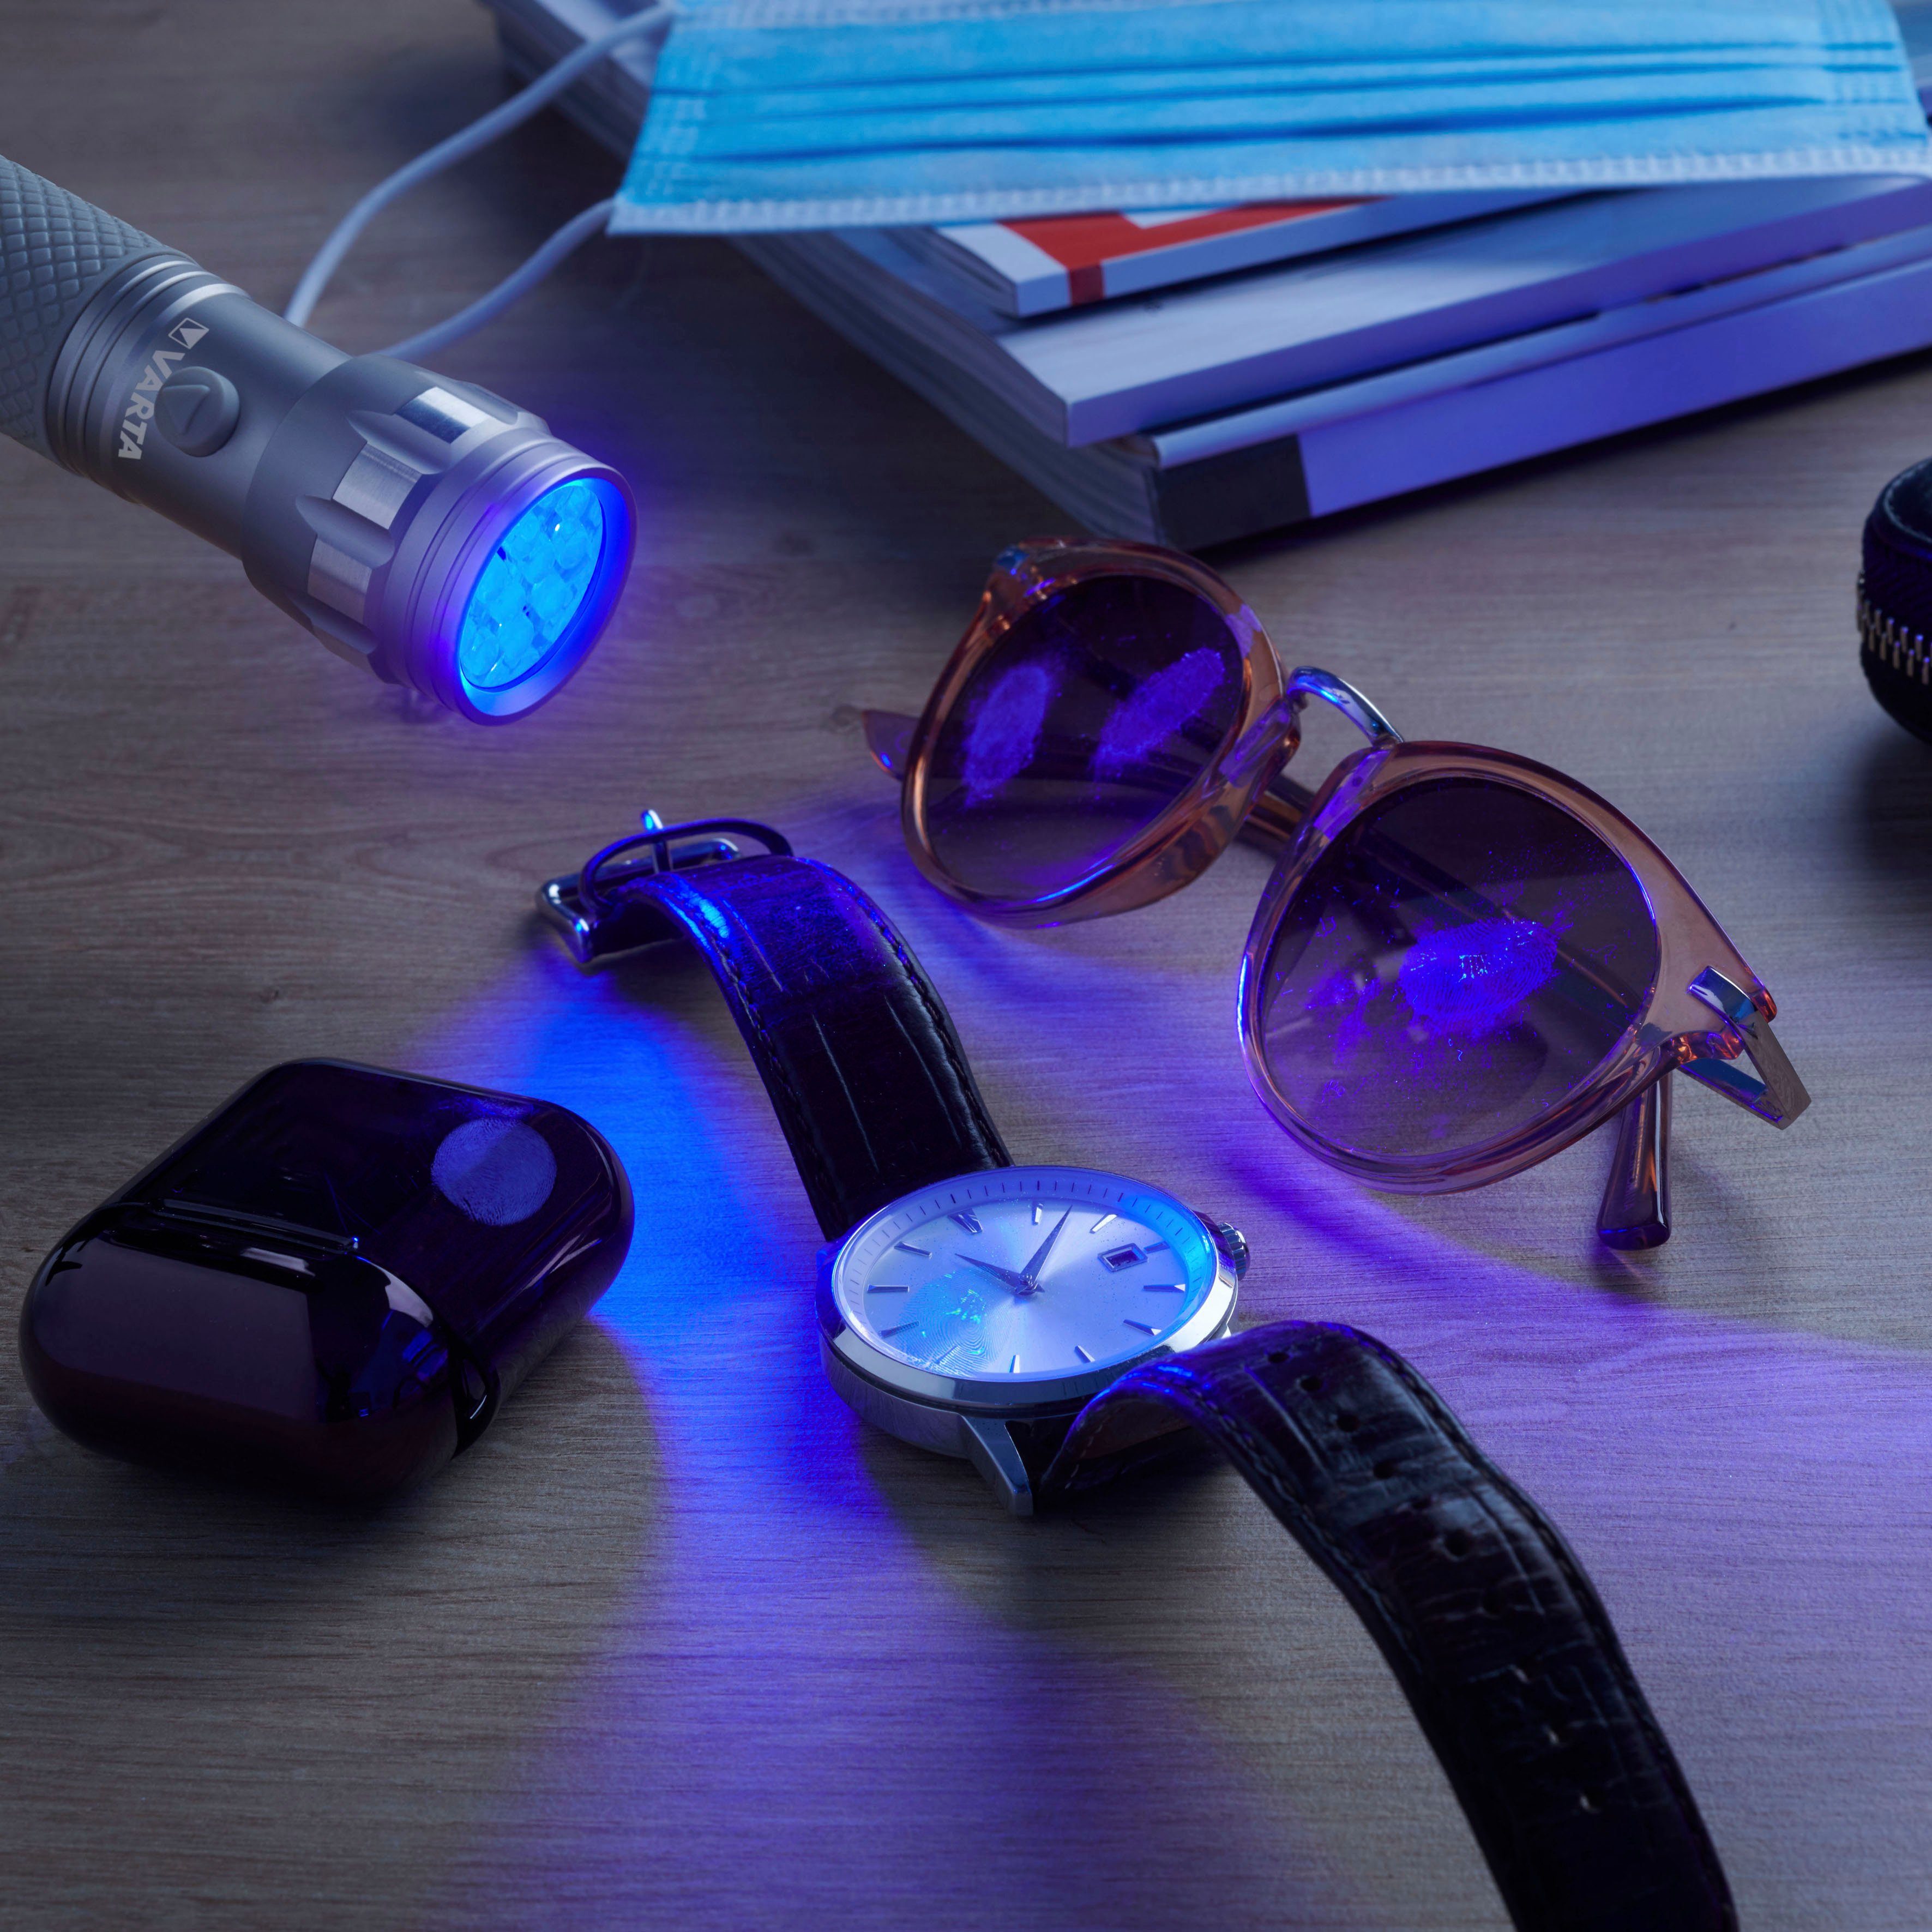 macht sichtbar Unsichtbares Hygienehilfe Leuchte Taschenlampe UV Licht Schwarzlicht mit VARTA (Set),